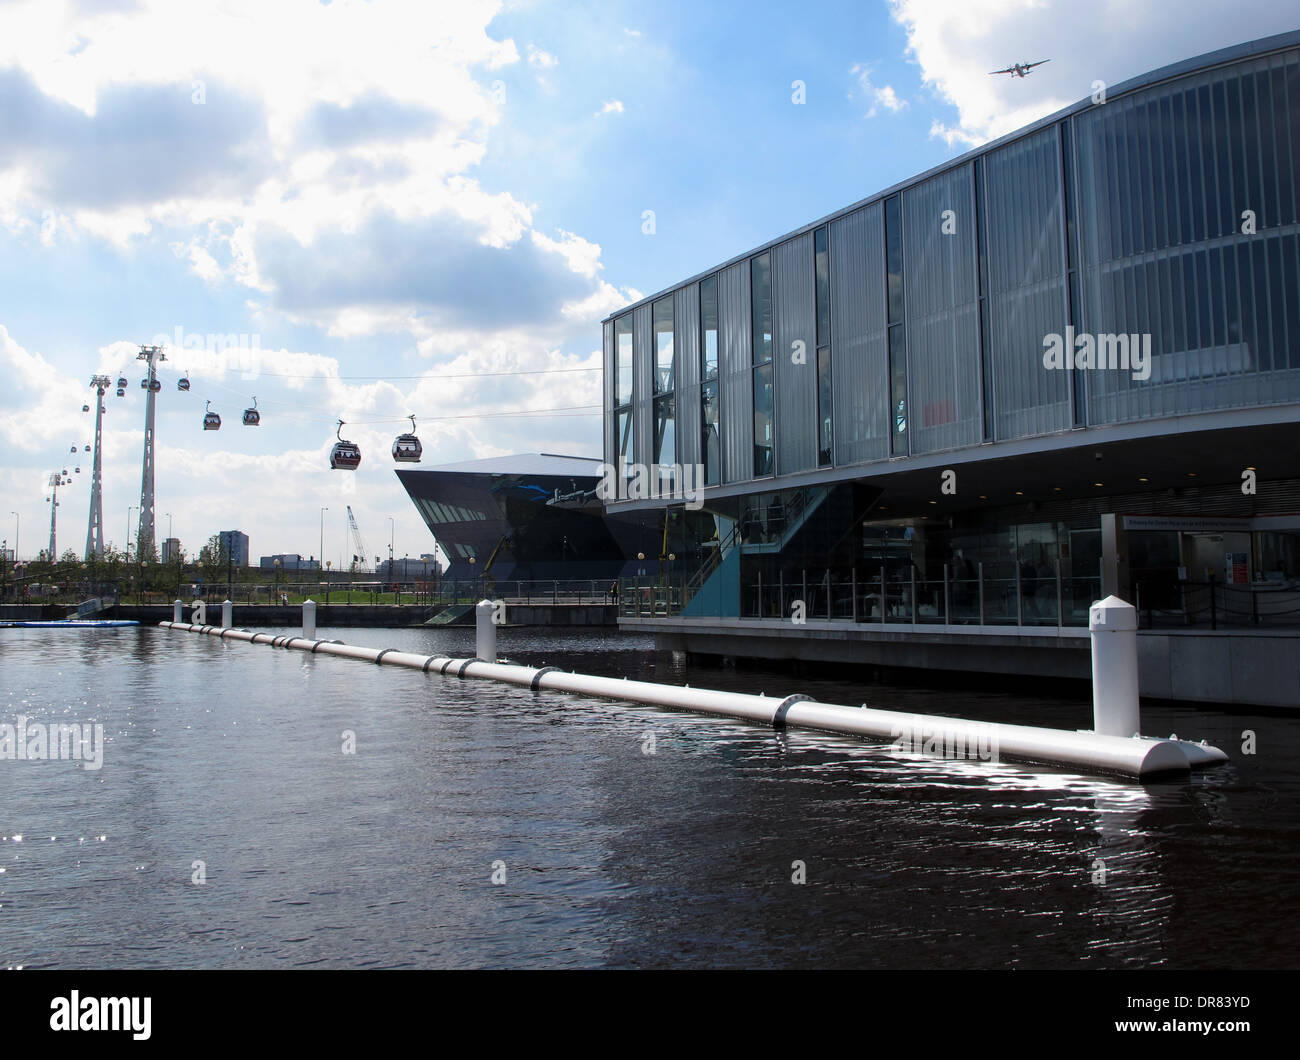 Station Dock Royal Emirates, le terminus nord de la téléphérique Thames River Crossing. Banque D'Images